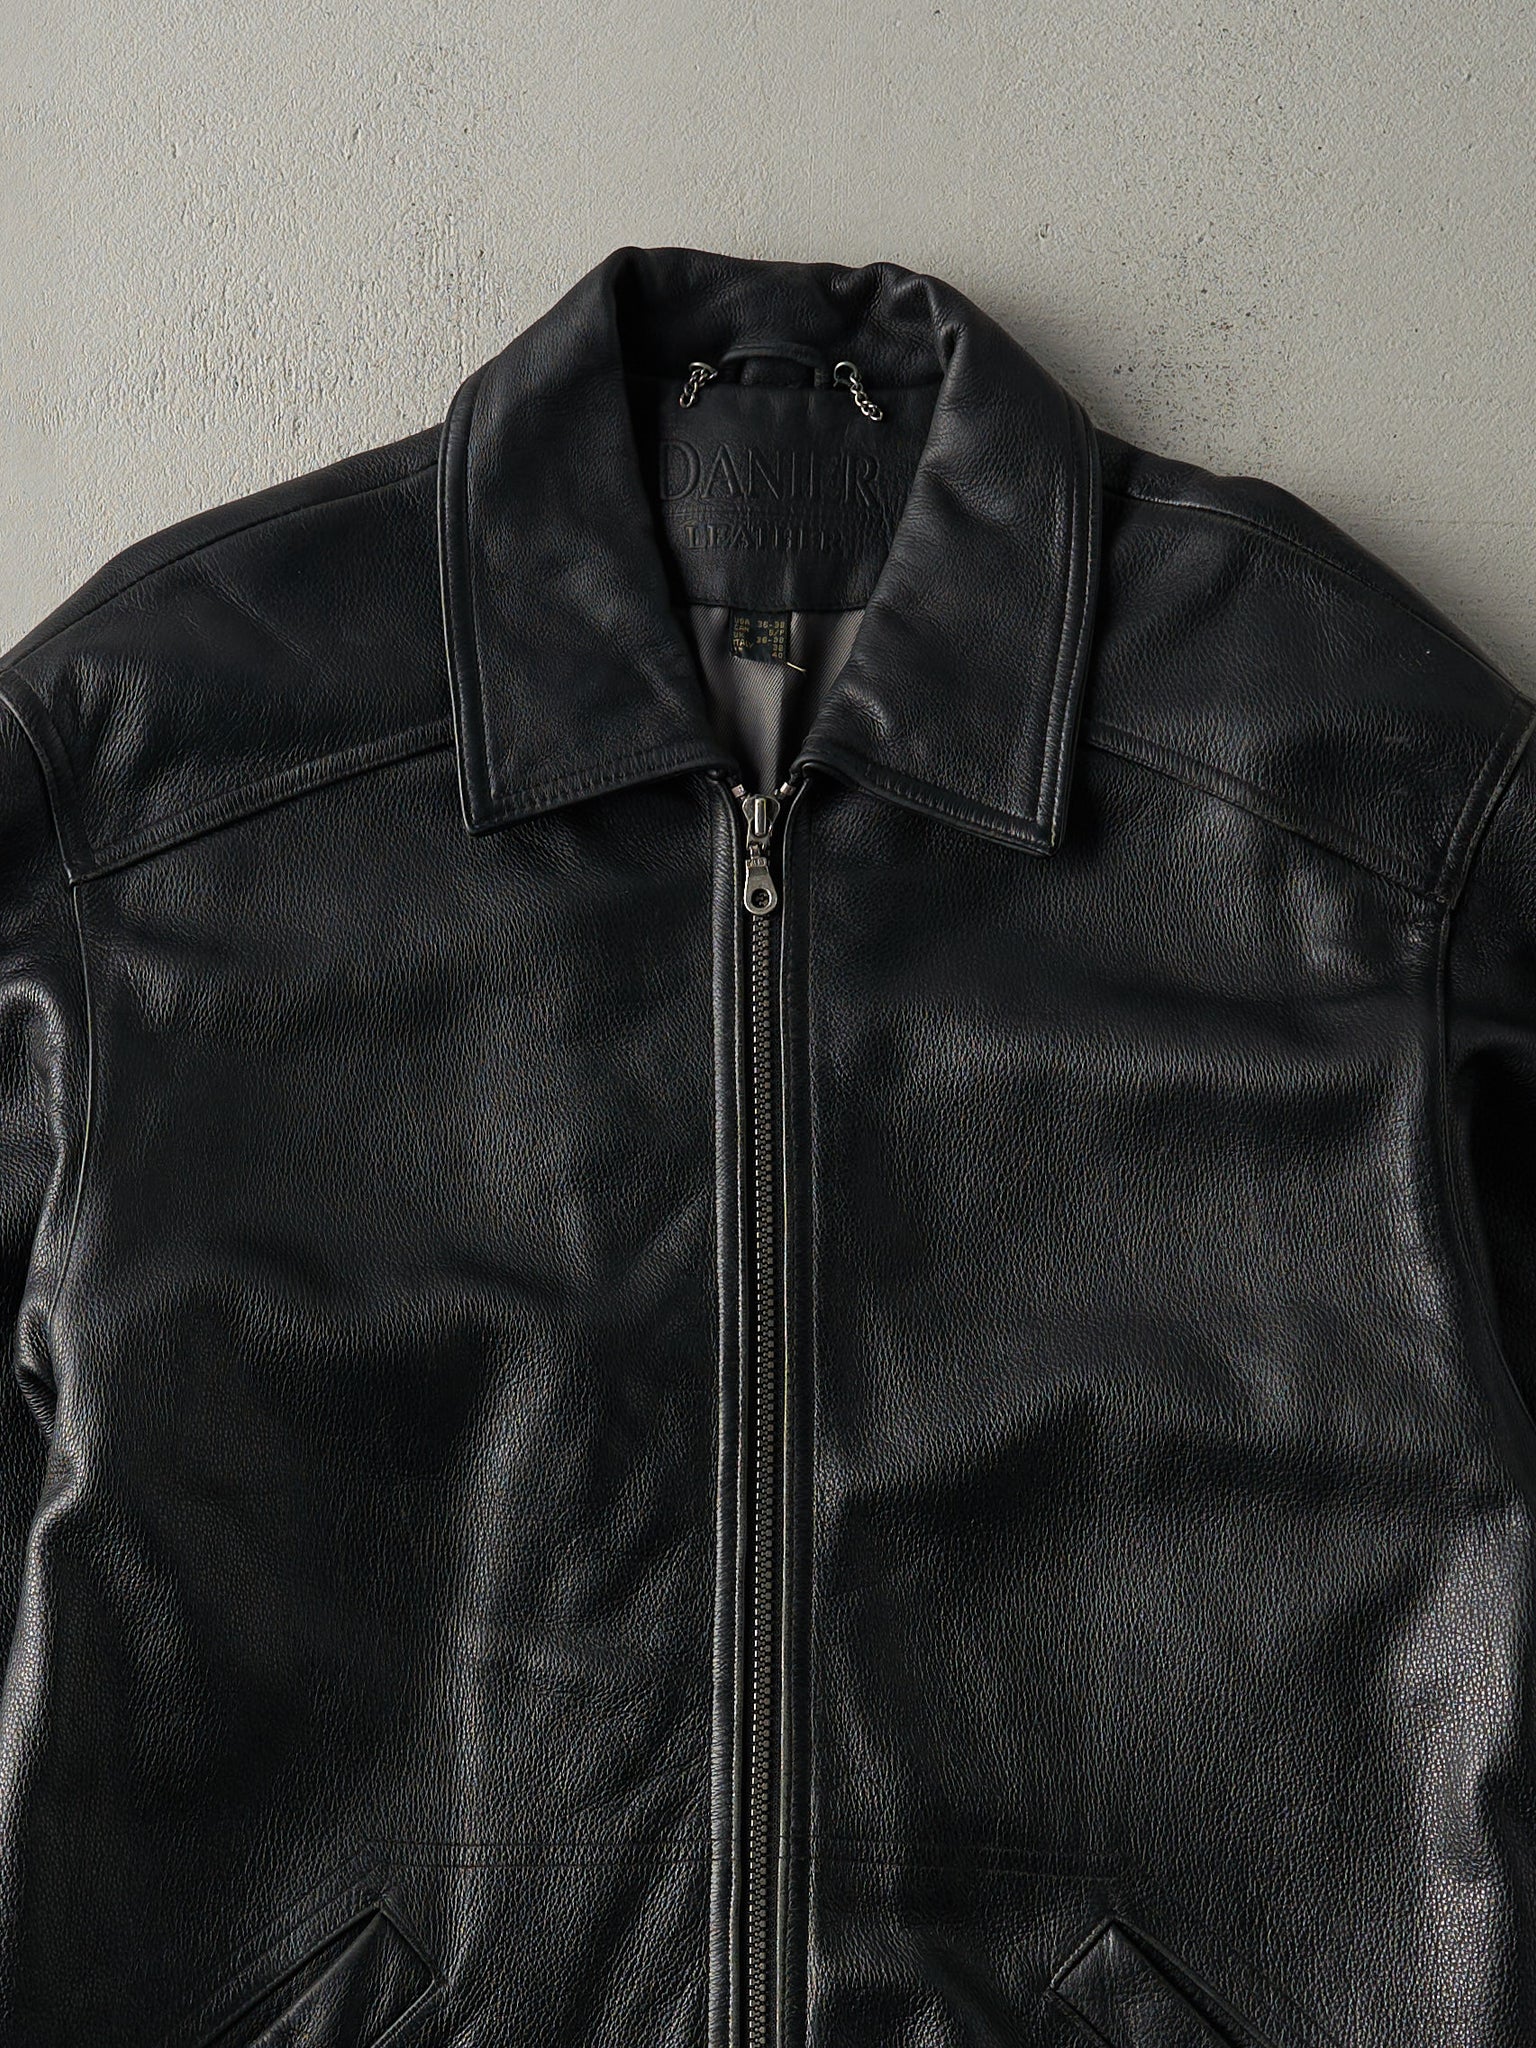 Vintage 90s Black Danier Long Leather Jacket (M)